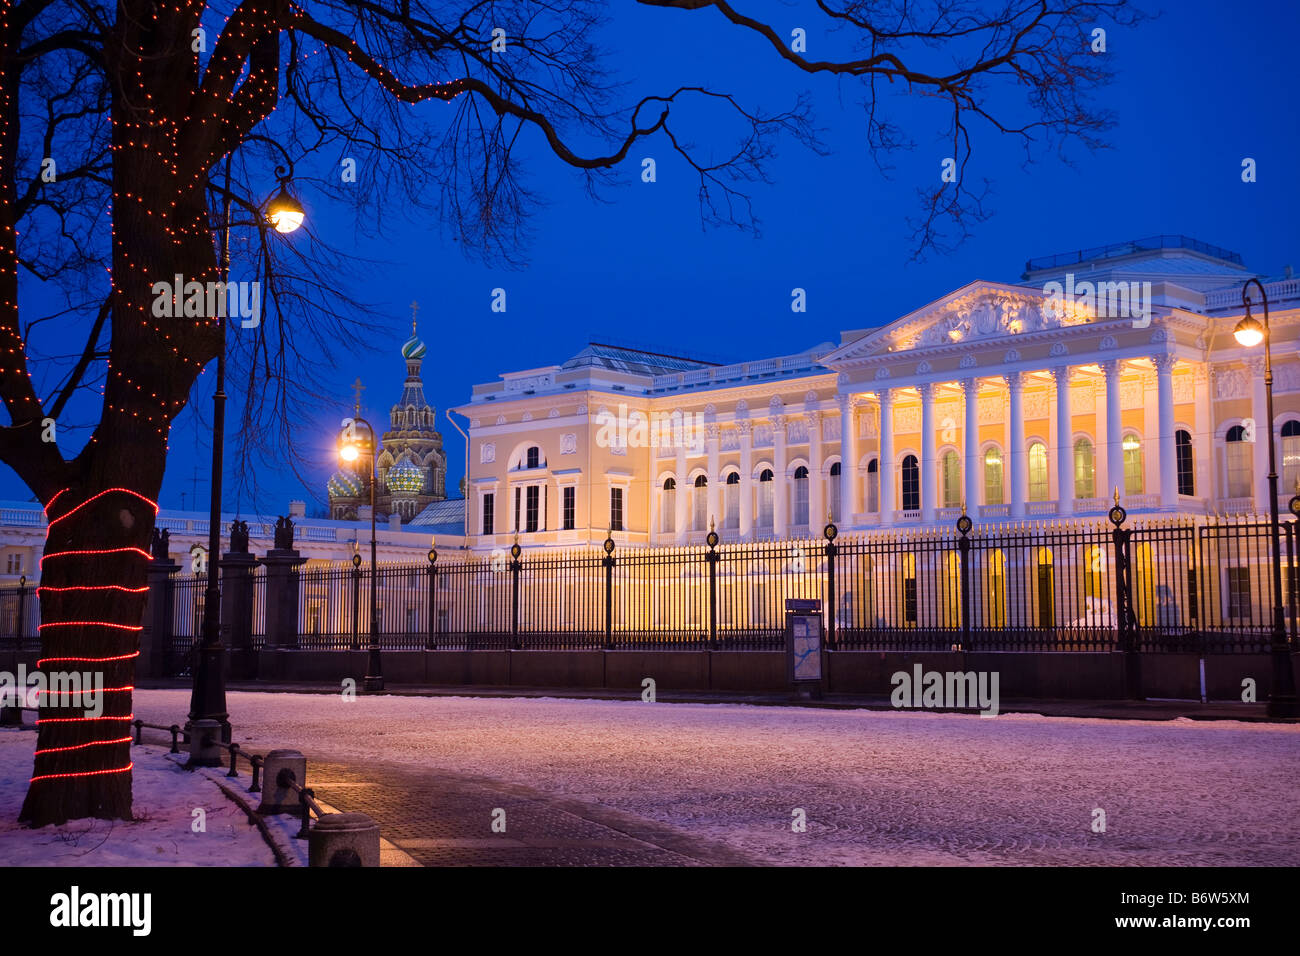 Deko-Licht-design die Stämme der Bäume LED Girlanden. Dem staatlichen russischen Museum, Sankt Petersburg, Russland. Stockfoto